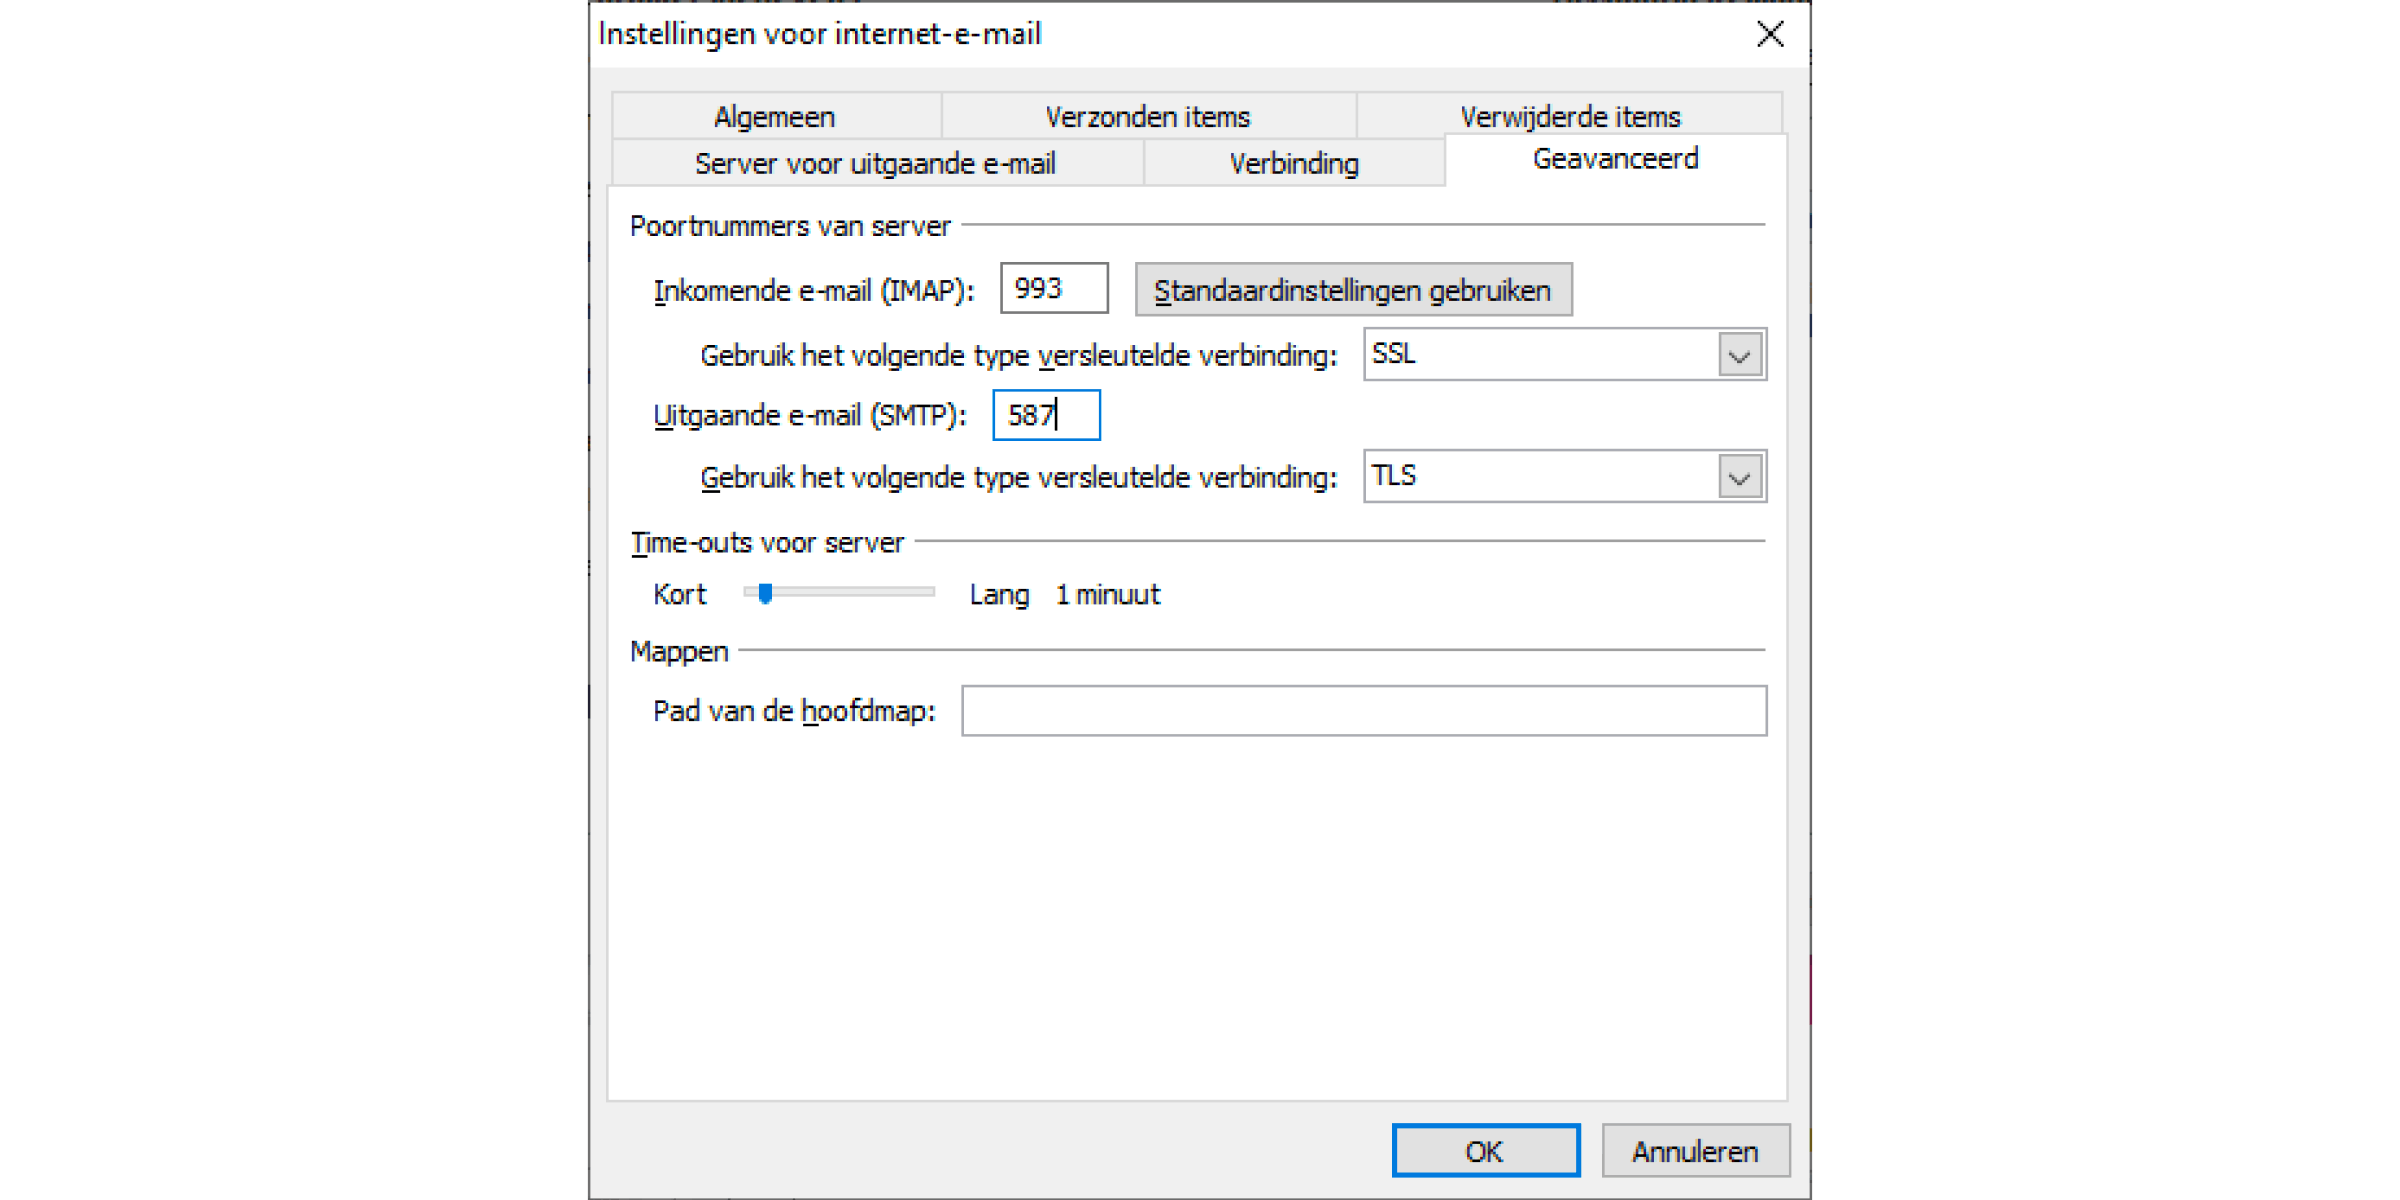 Instellingen voor internet e-mail